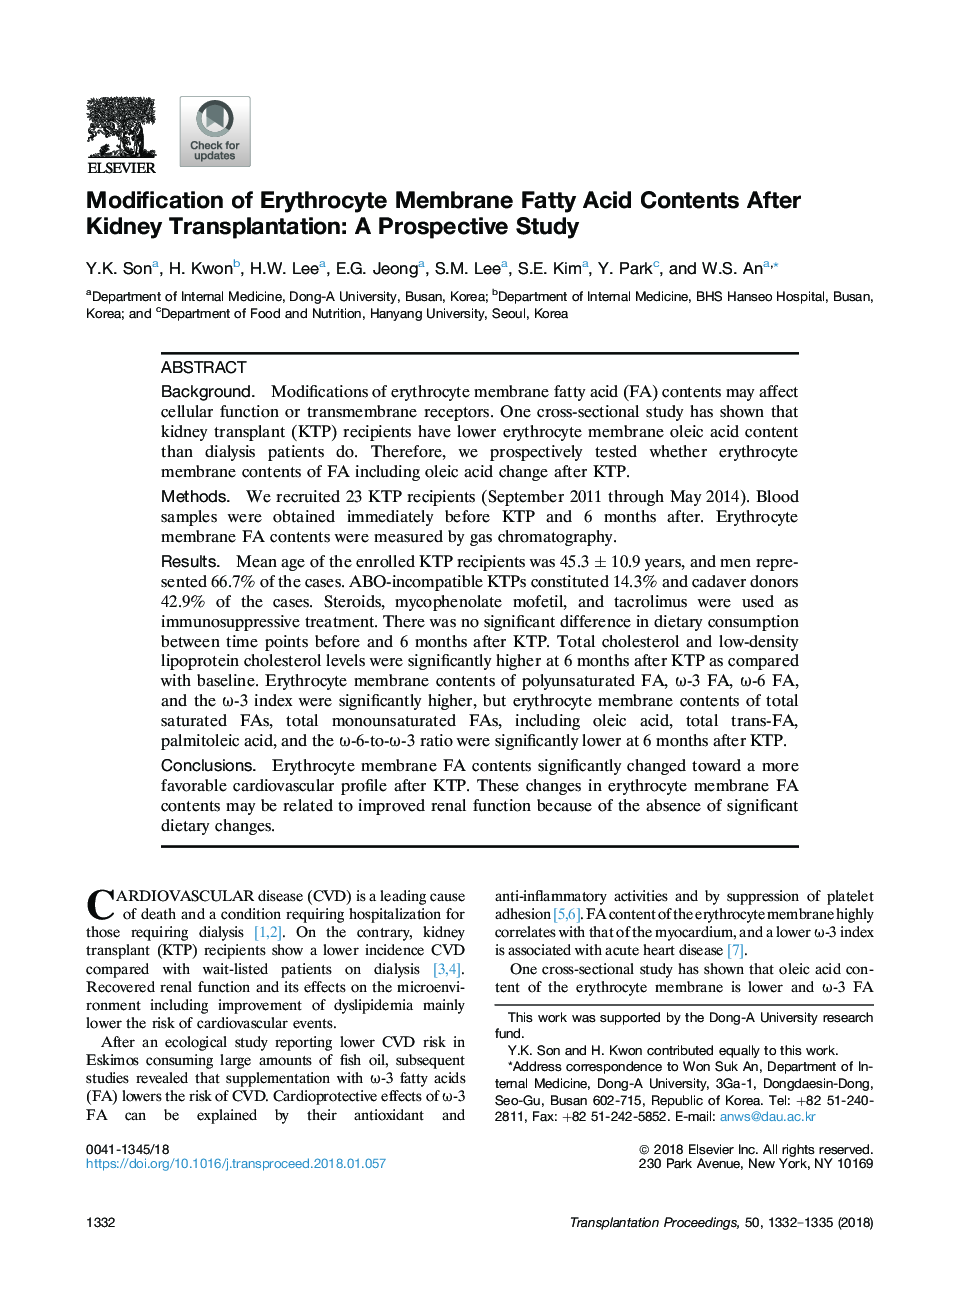 اصلاح محتوای غشاء اریتروسیت اسید چرب بعد از پیوند کلیه: مطالعه آینده نگر 